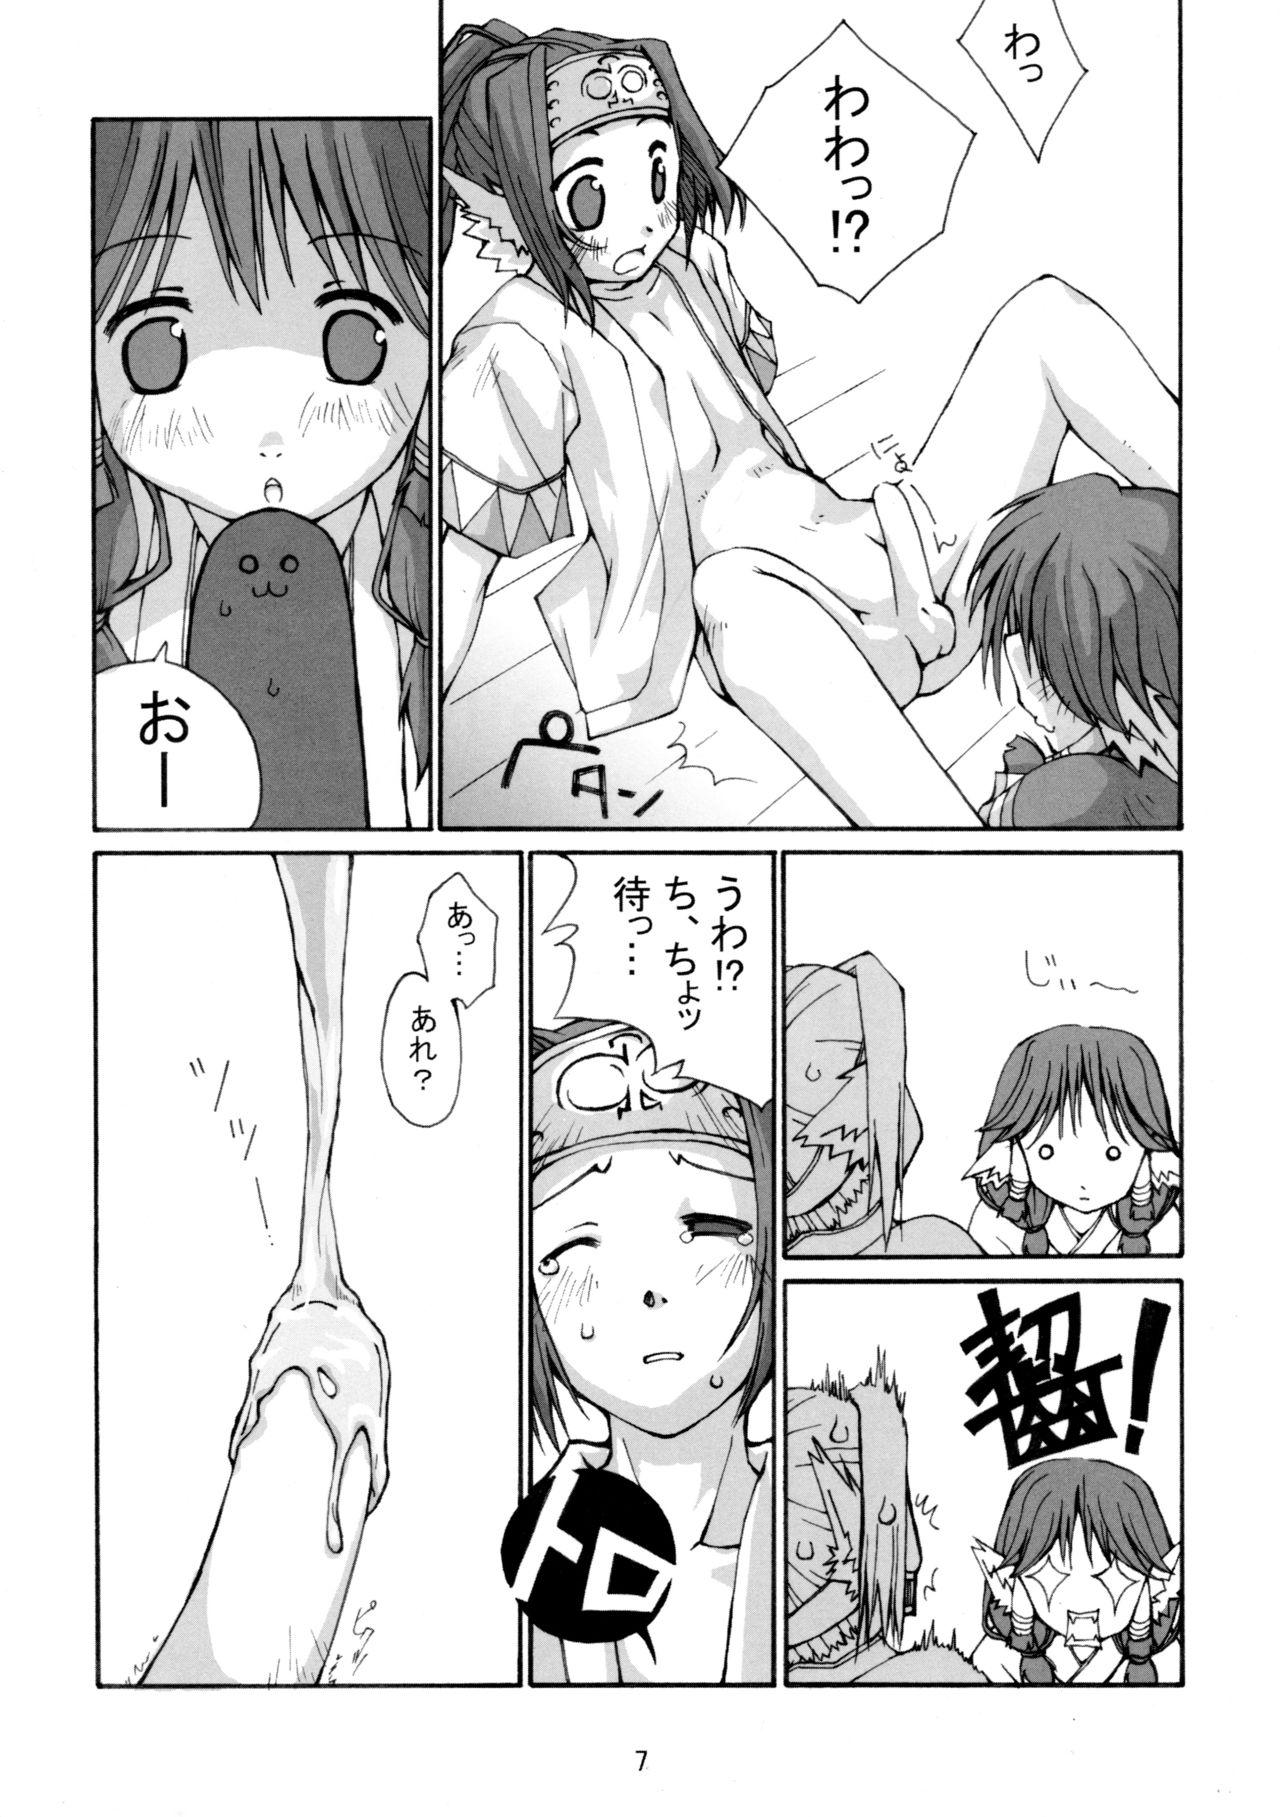 Orgasm Hachimitsu - Utawarerumono Blows - Page 9